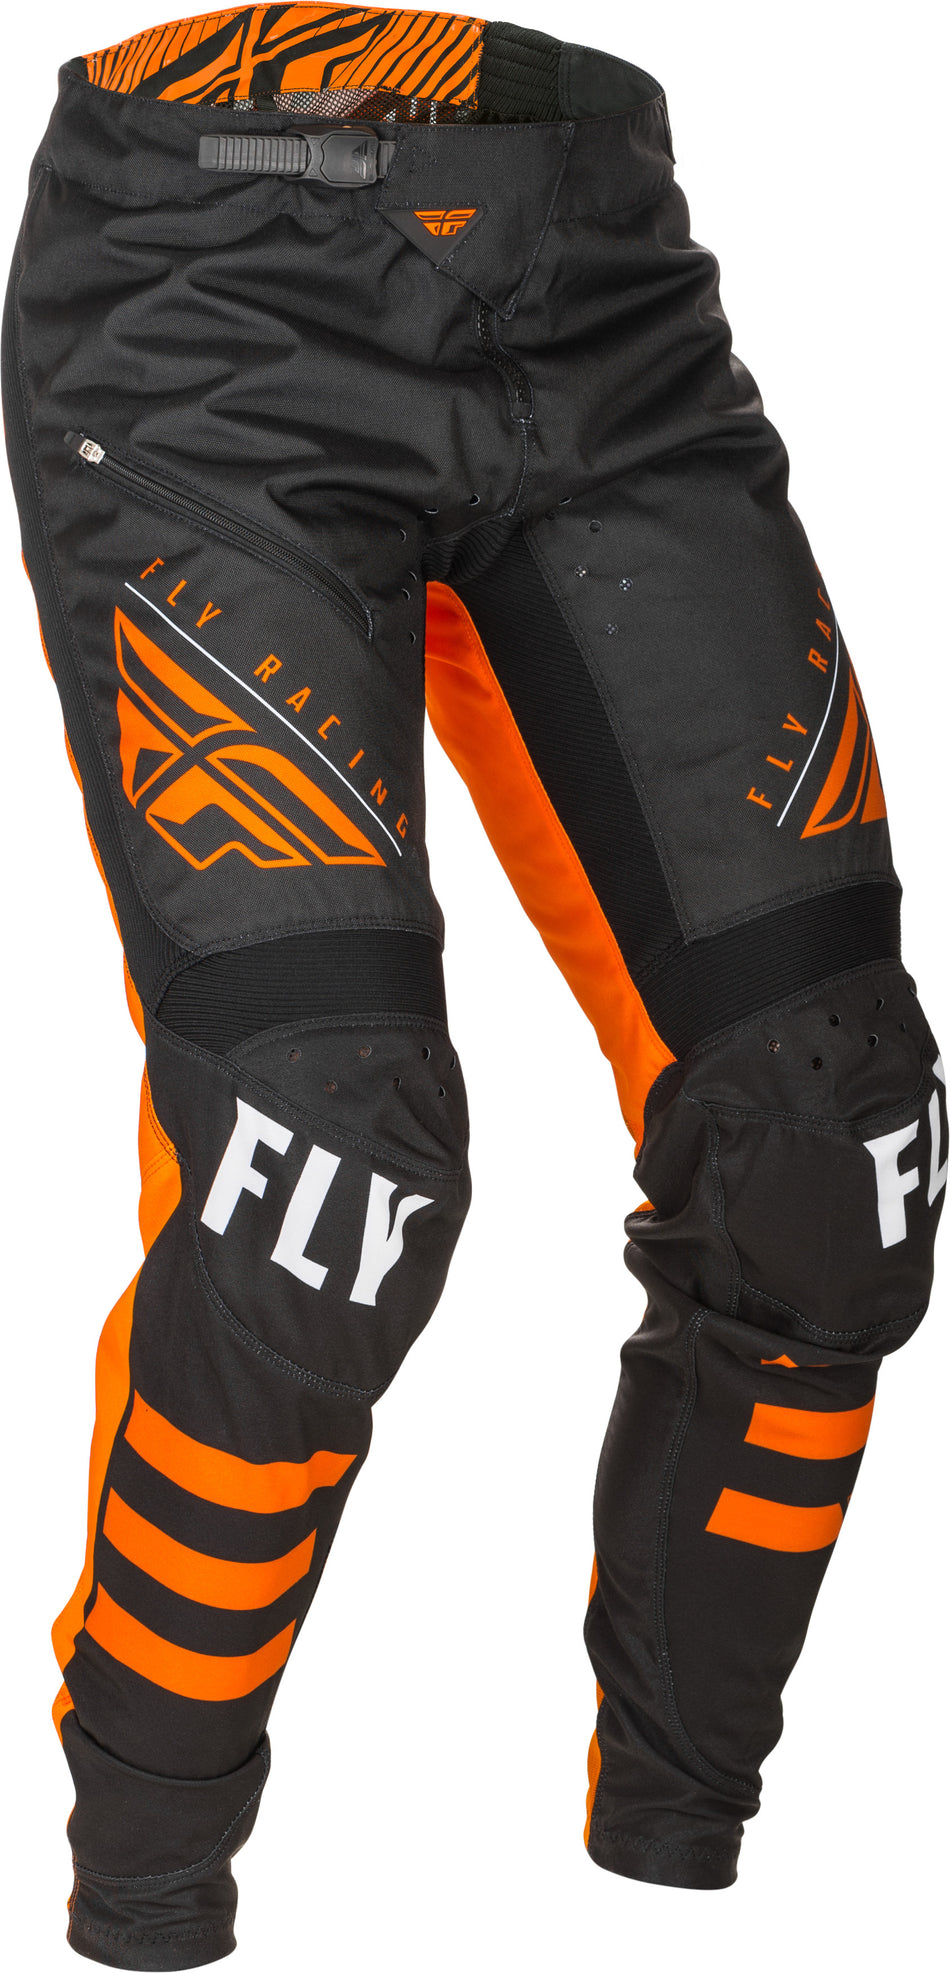 FLY RACING Kinetic Bicycle Pants Black/Orange Sz 30 373-04730